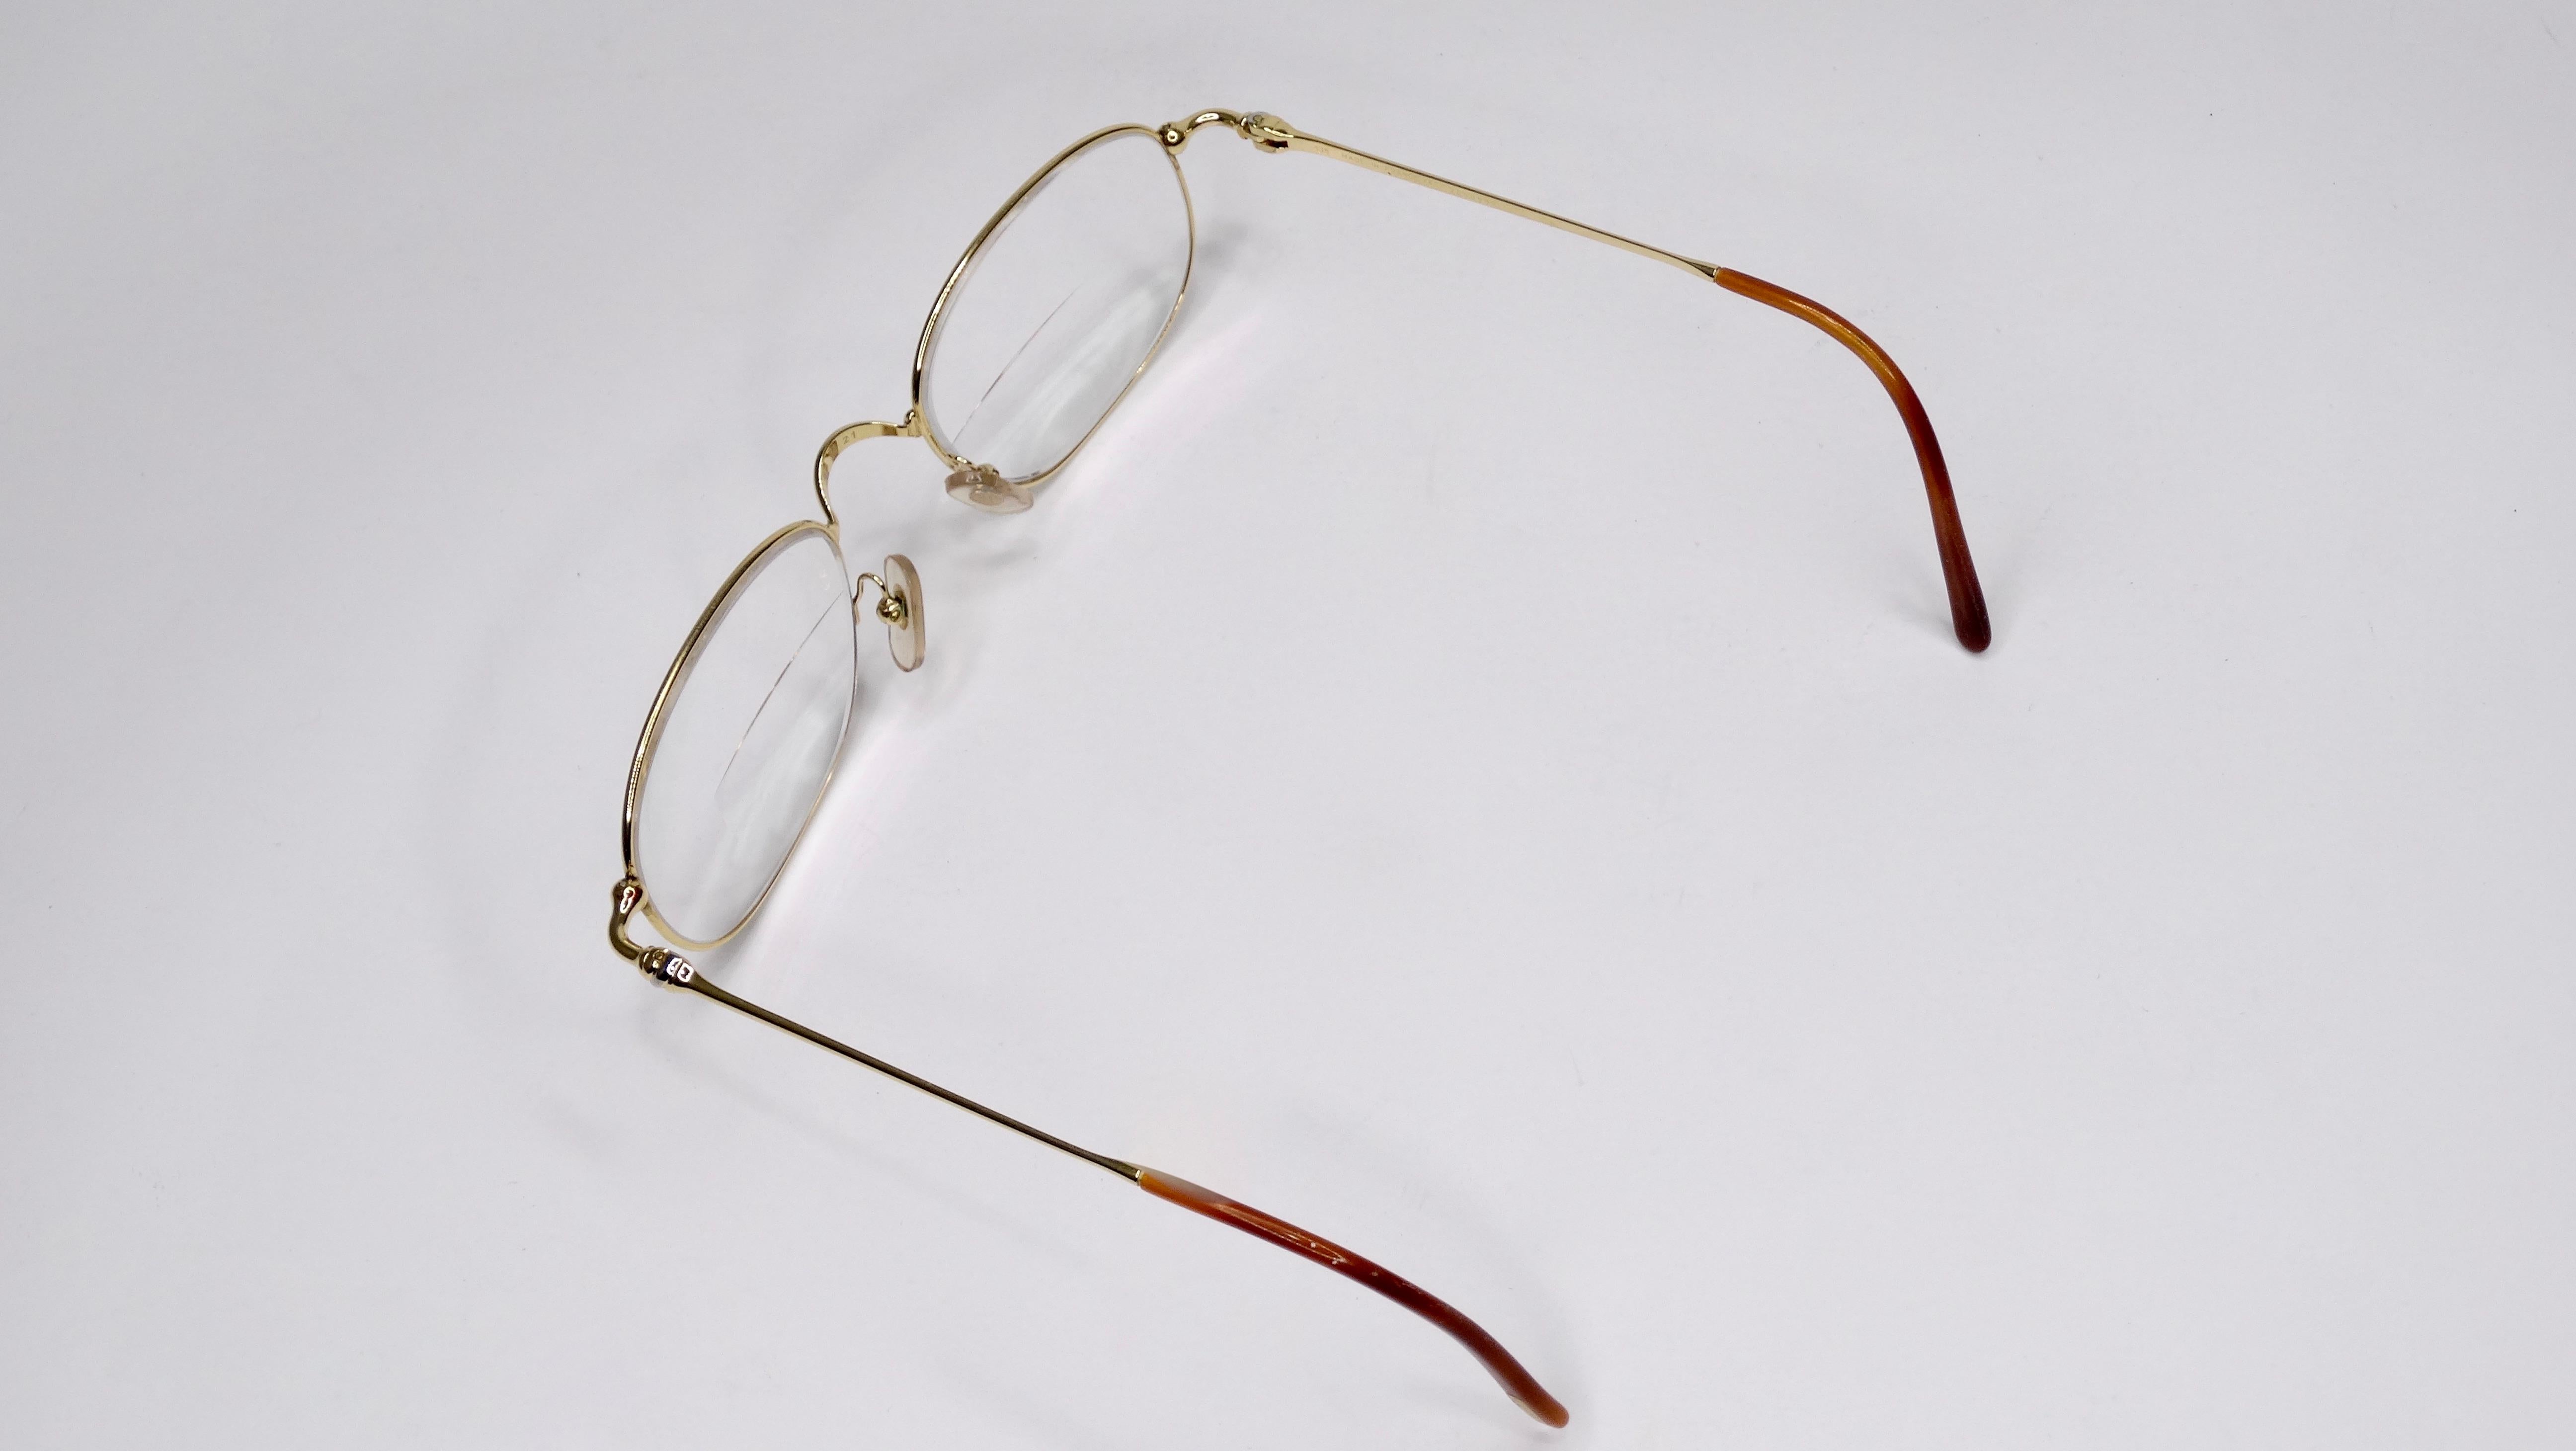 Préféré des amateurs de bijoux et de mode, Cartier est toujours un classique ! Circa 1980, ces lunettes présentent une monture bicolore argentée et plaquée or 18 carats avec un motif noué sur les branches. Les verres de ces lunettes sont des verres